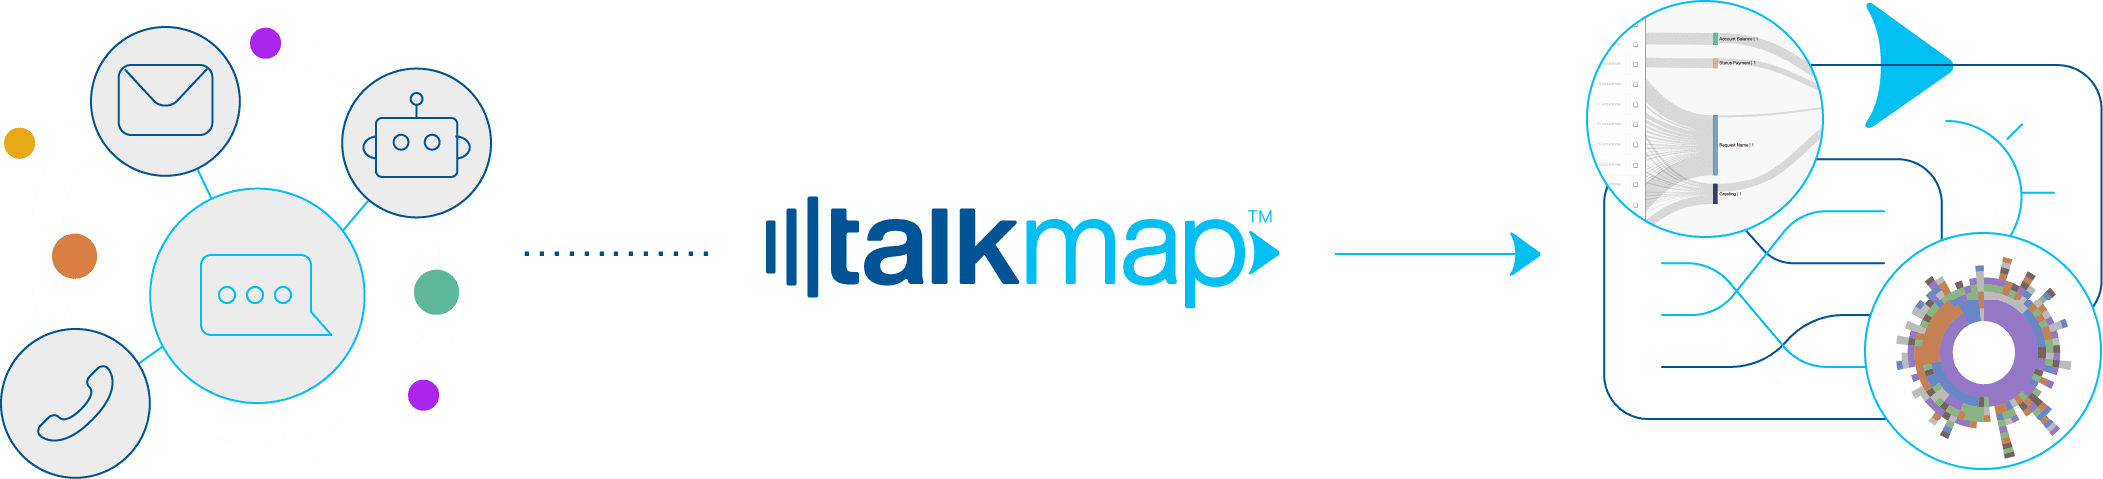 TalkMap Workflow